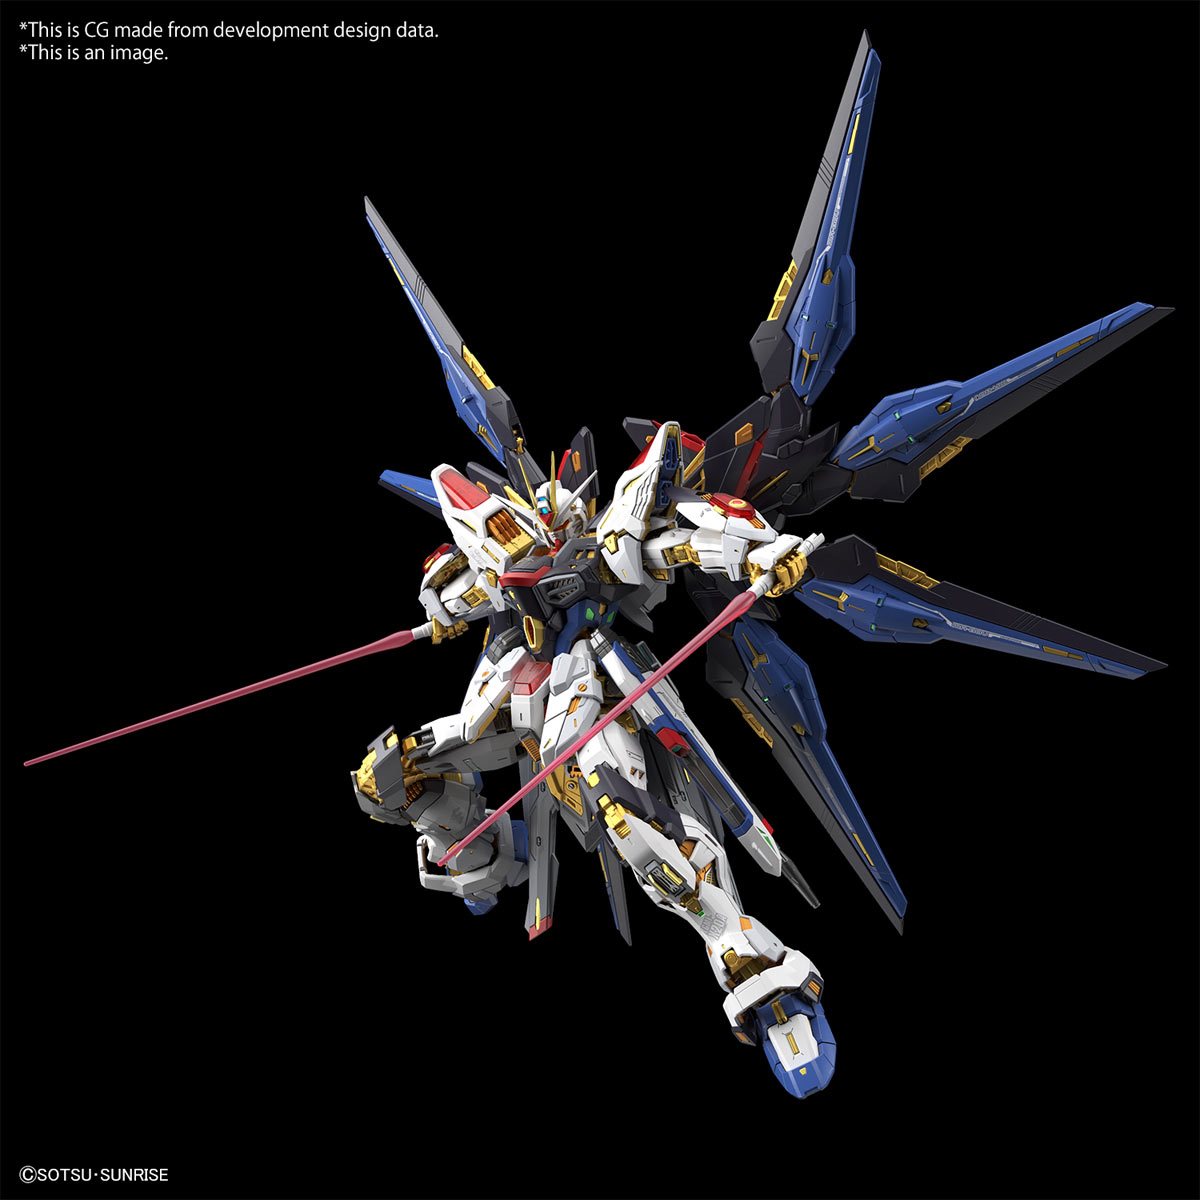 Bandai Hobby Gunpla Model Kit: Gundam SEED Destiny - Strike Freedom Gundam Master Grade Extreme Escala 1/100